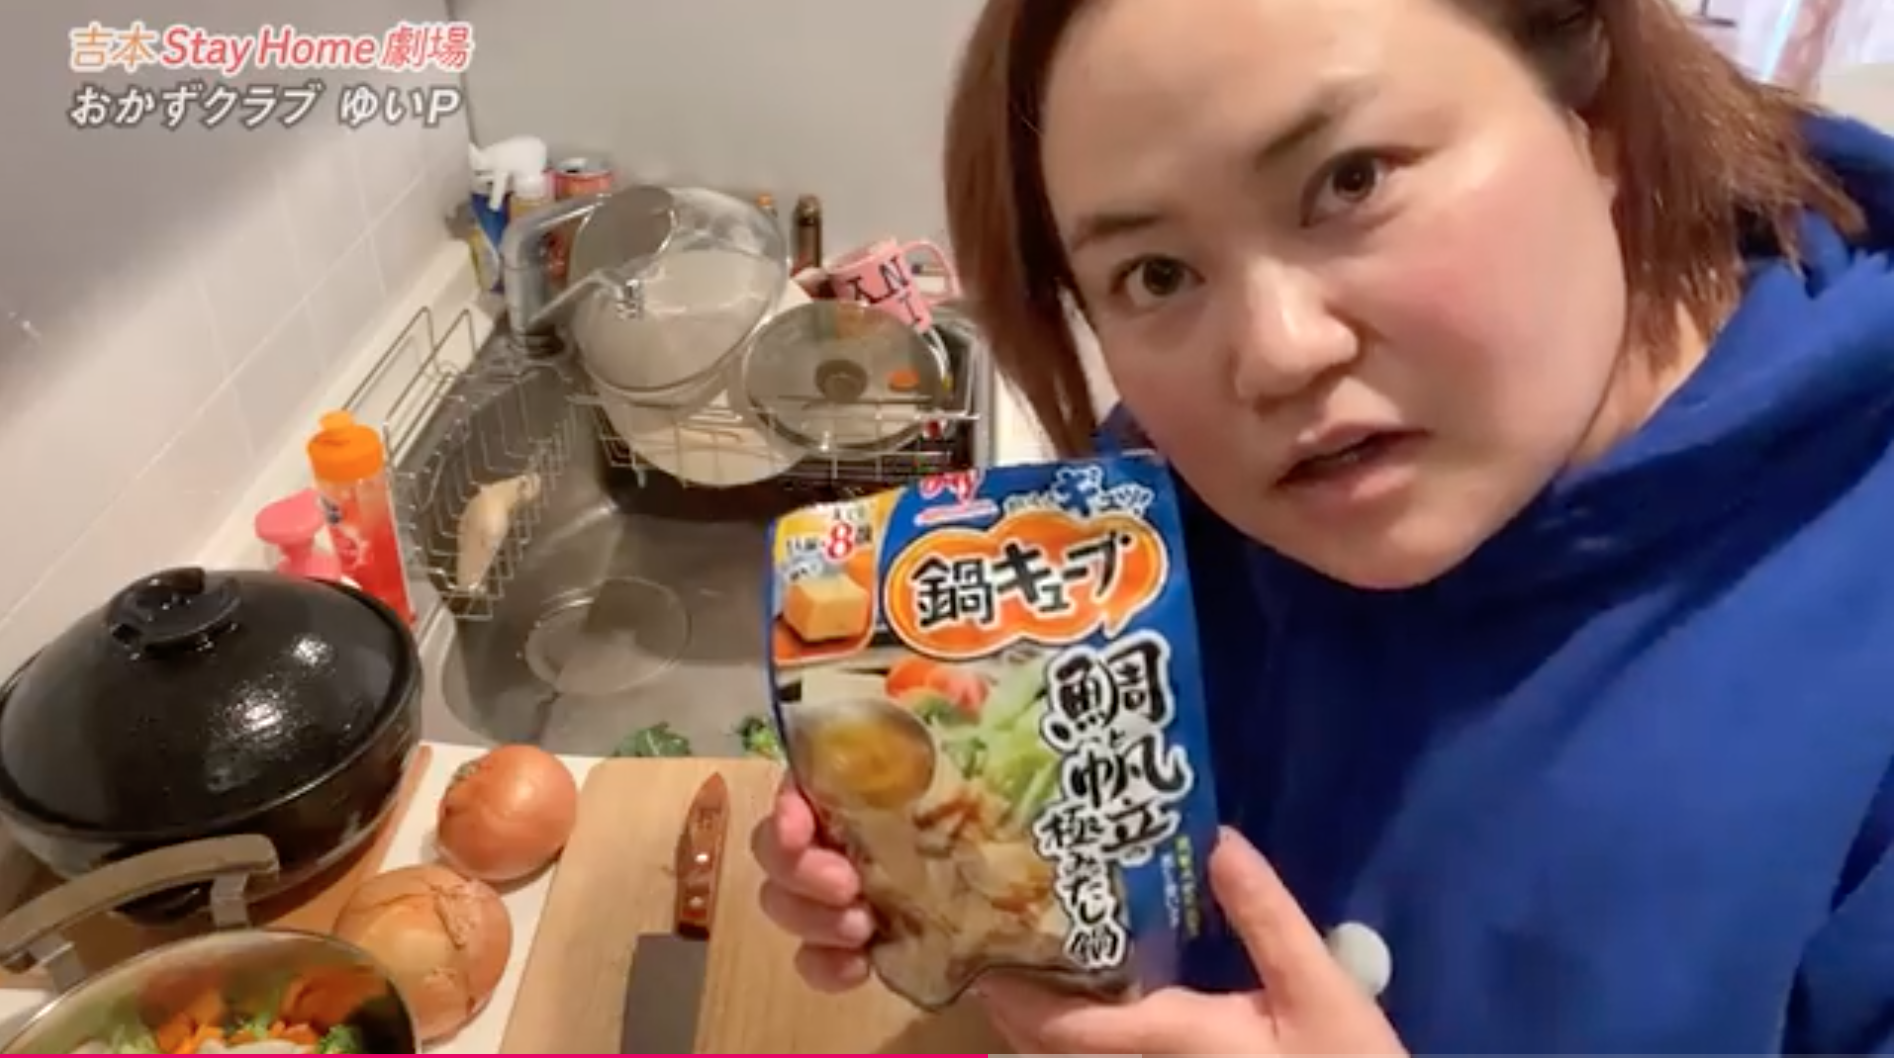 ゆいpダイエット 野菜スープのレシピ 30kgダイエット法は超簡単 痩せるコロナ減量 Yokohamaトレンド速報